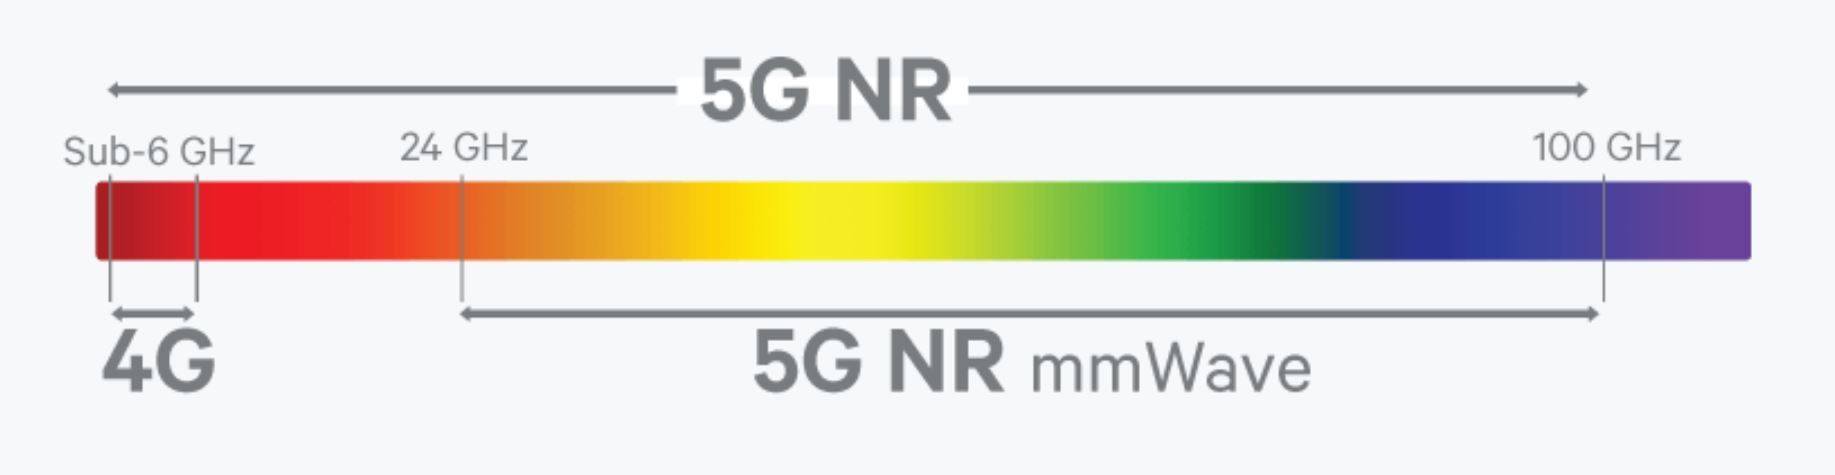 Frecuencias 5G - onda milimétrica